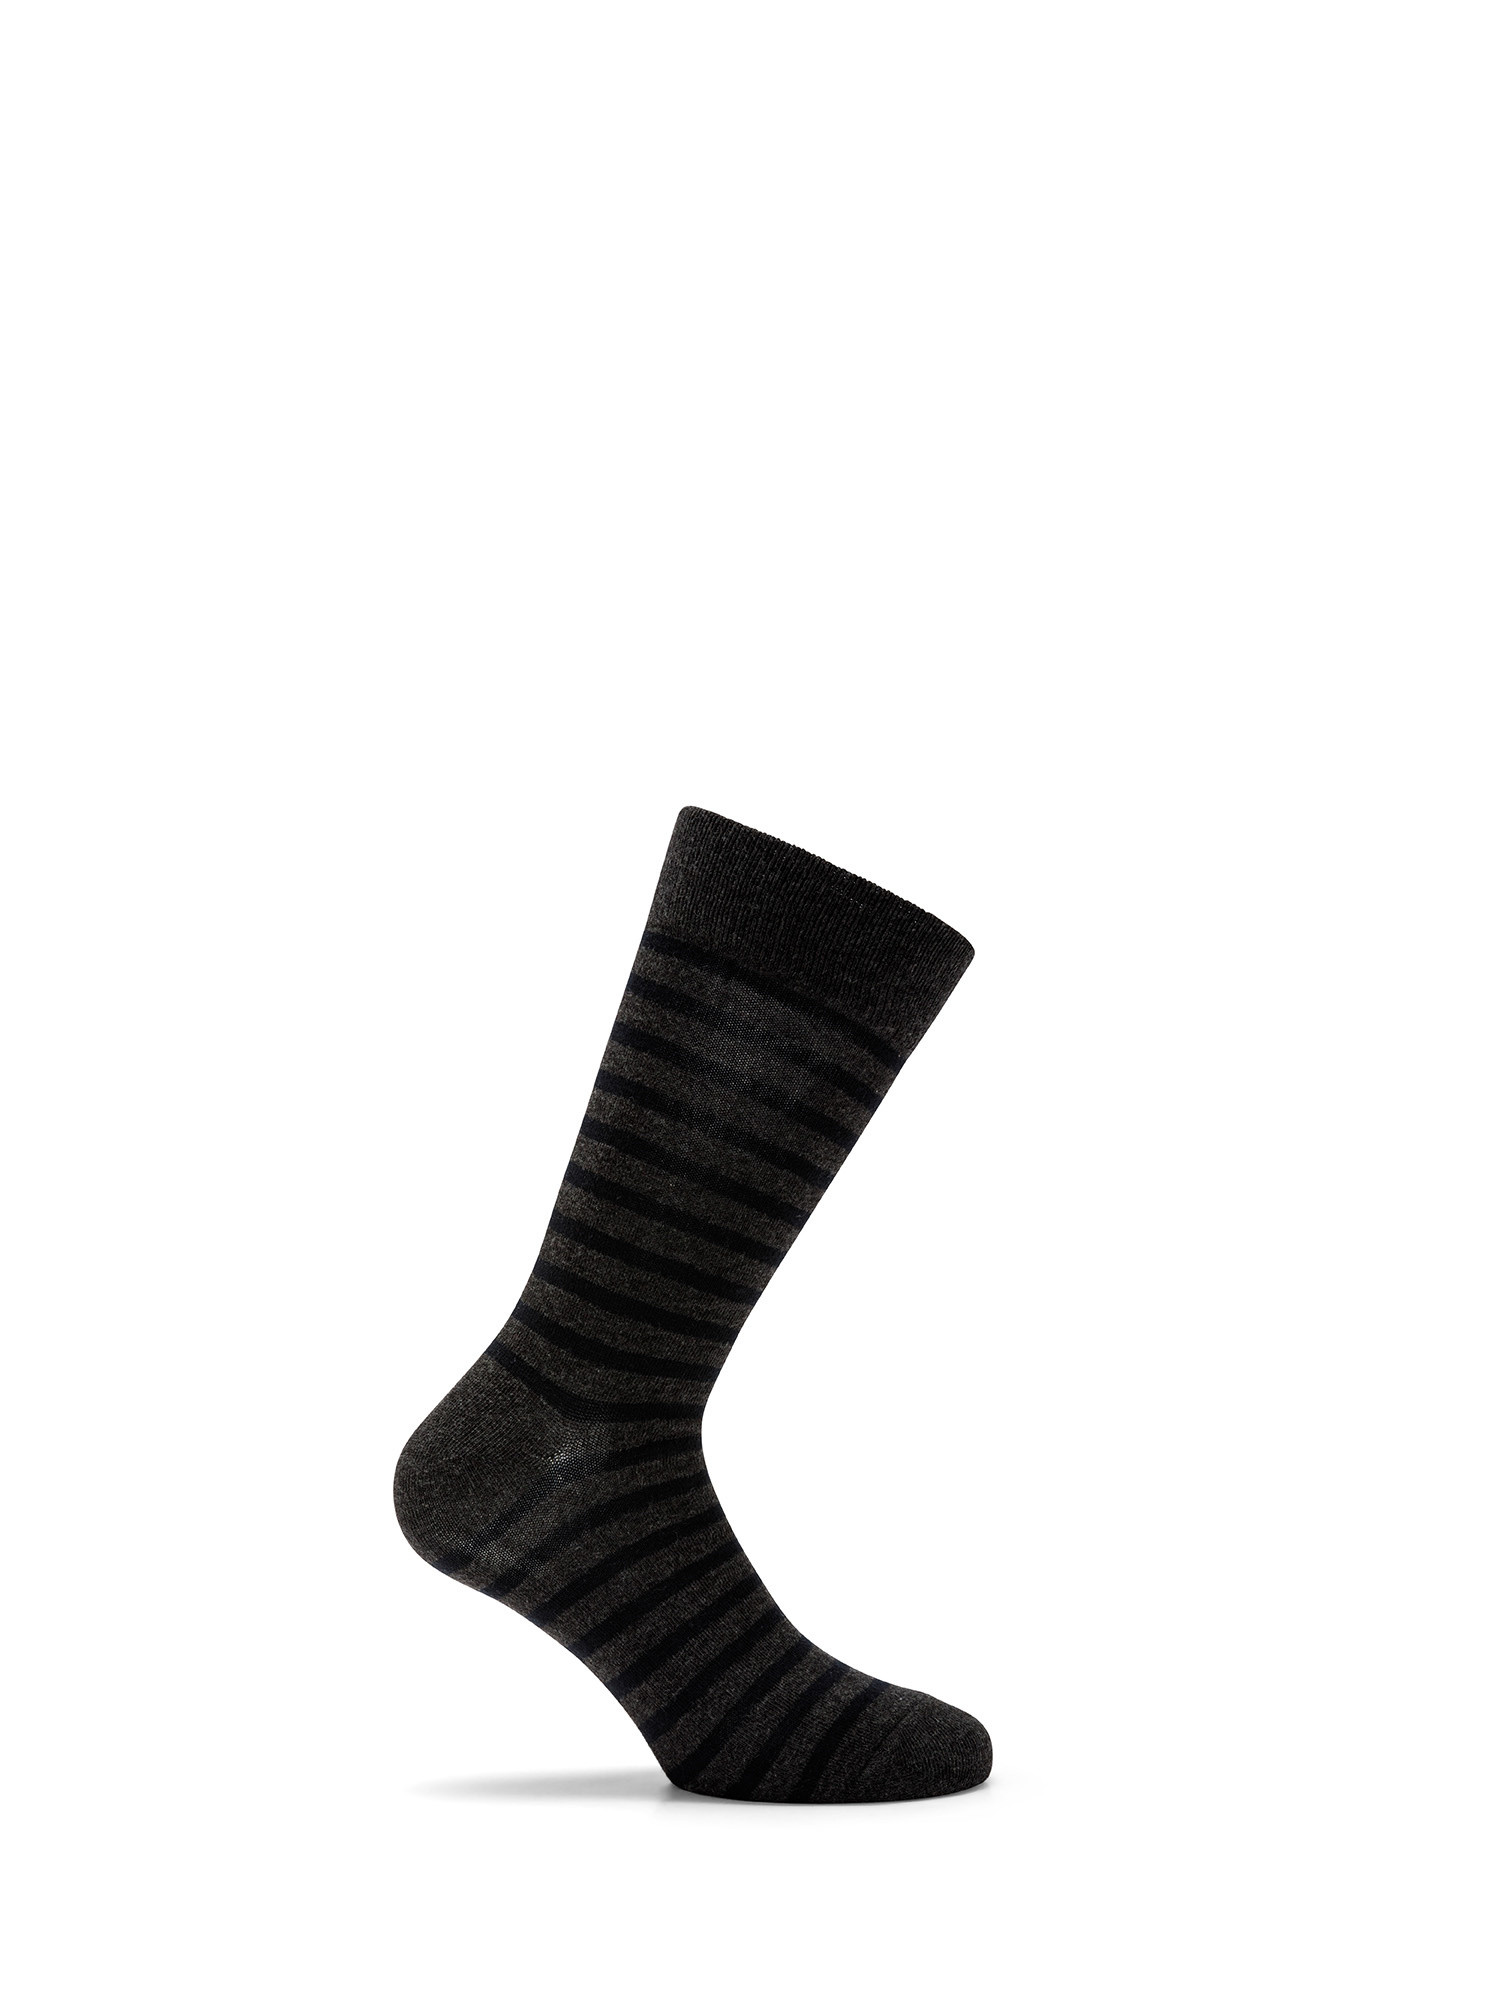 Luca D'Altieri - Set of 3 patterned short socks, Grey, large image number 1